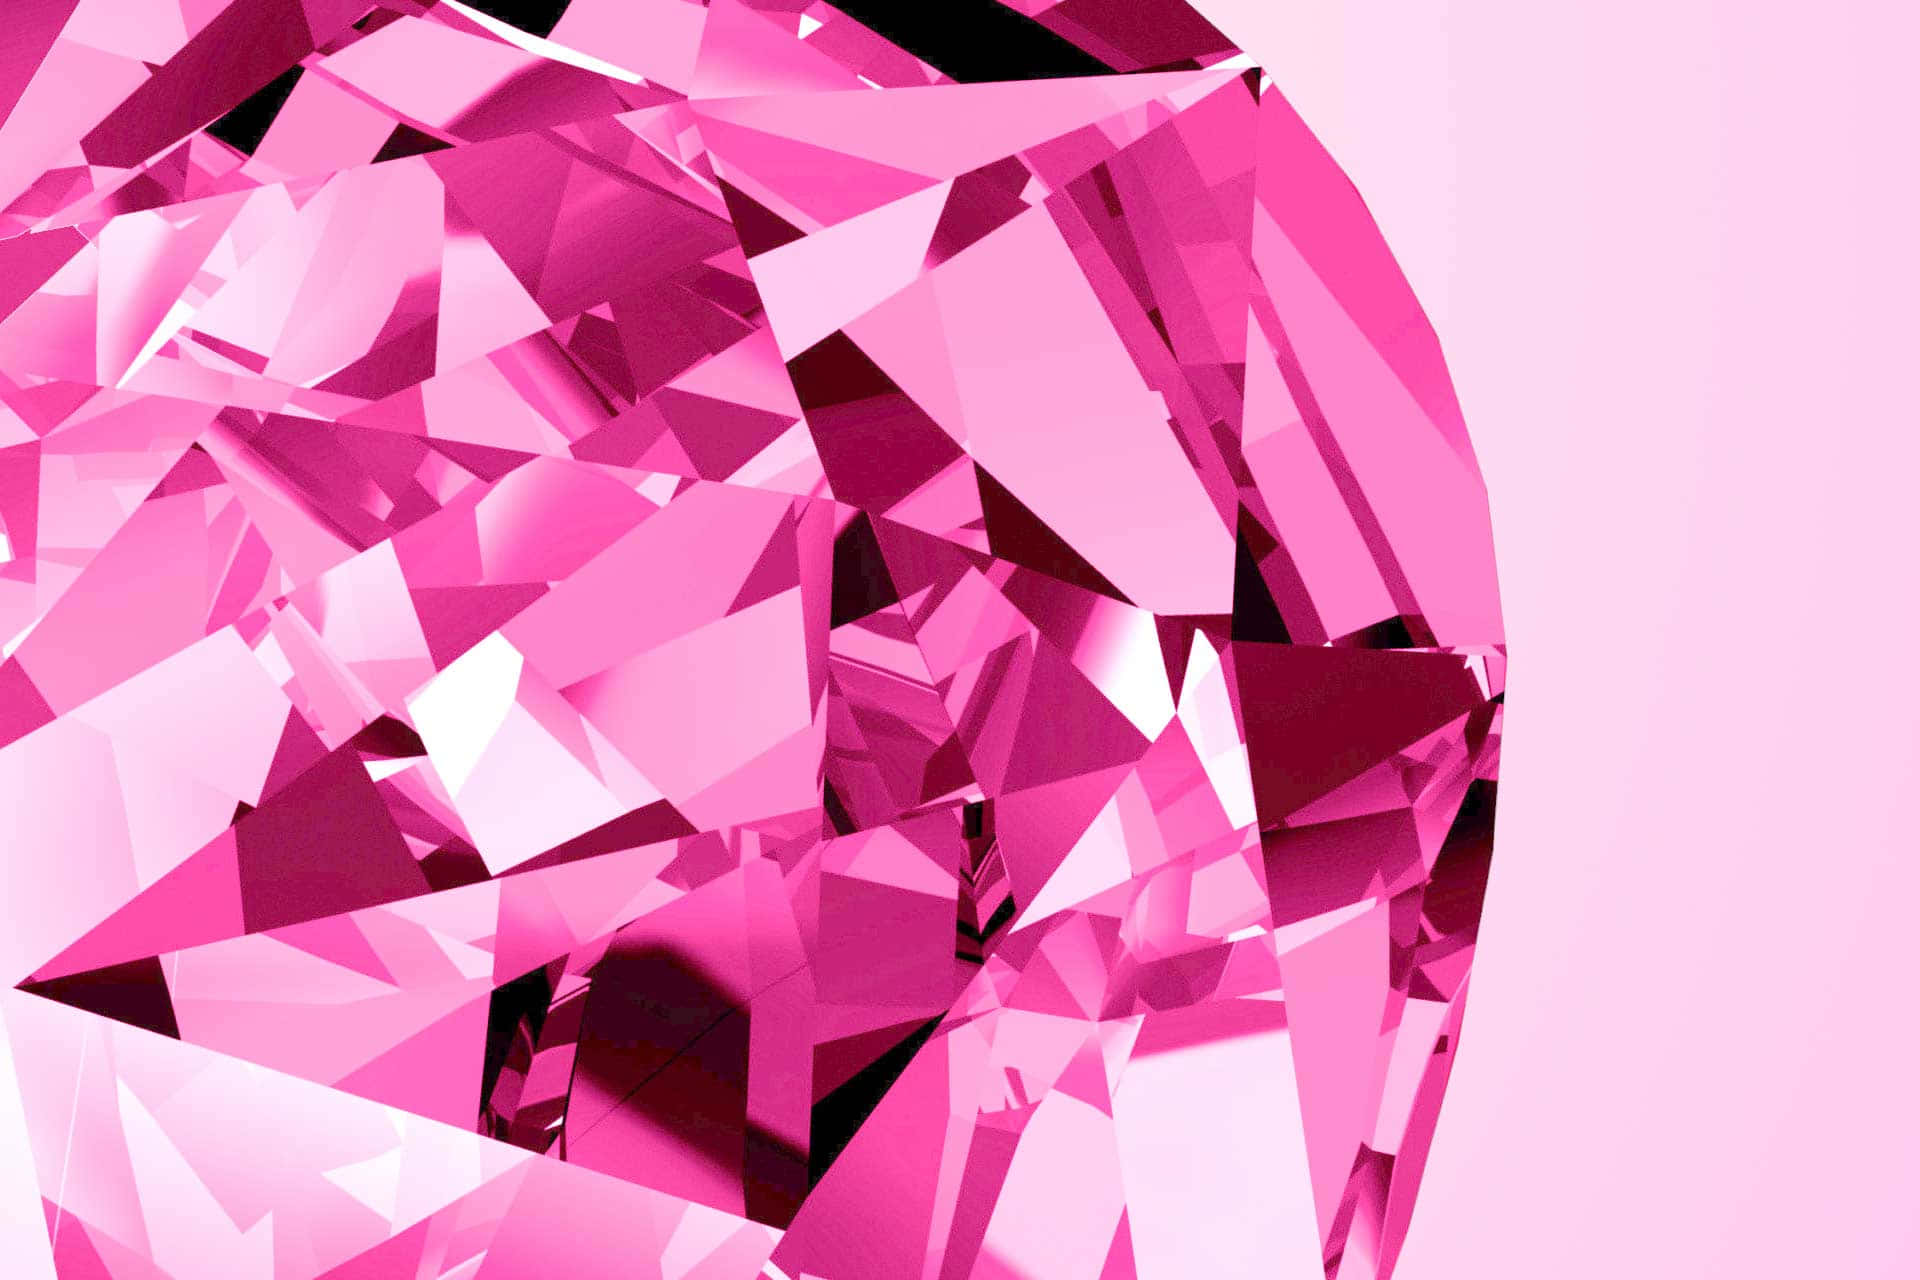 A rare pink diamond